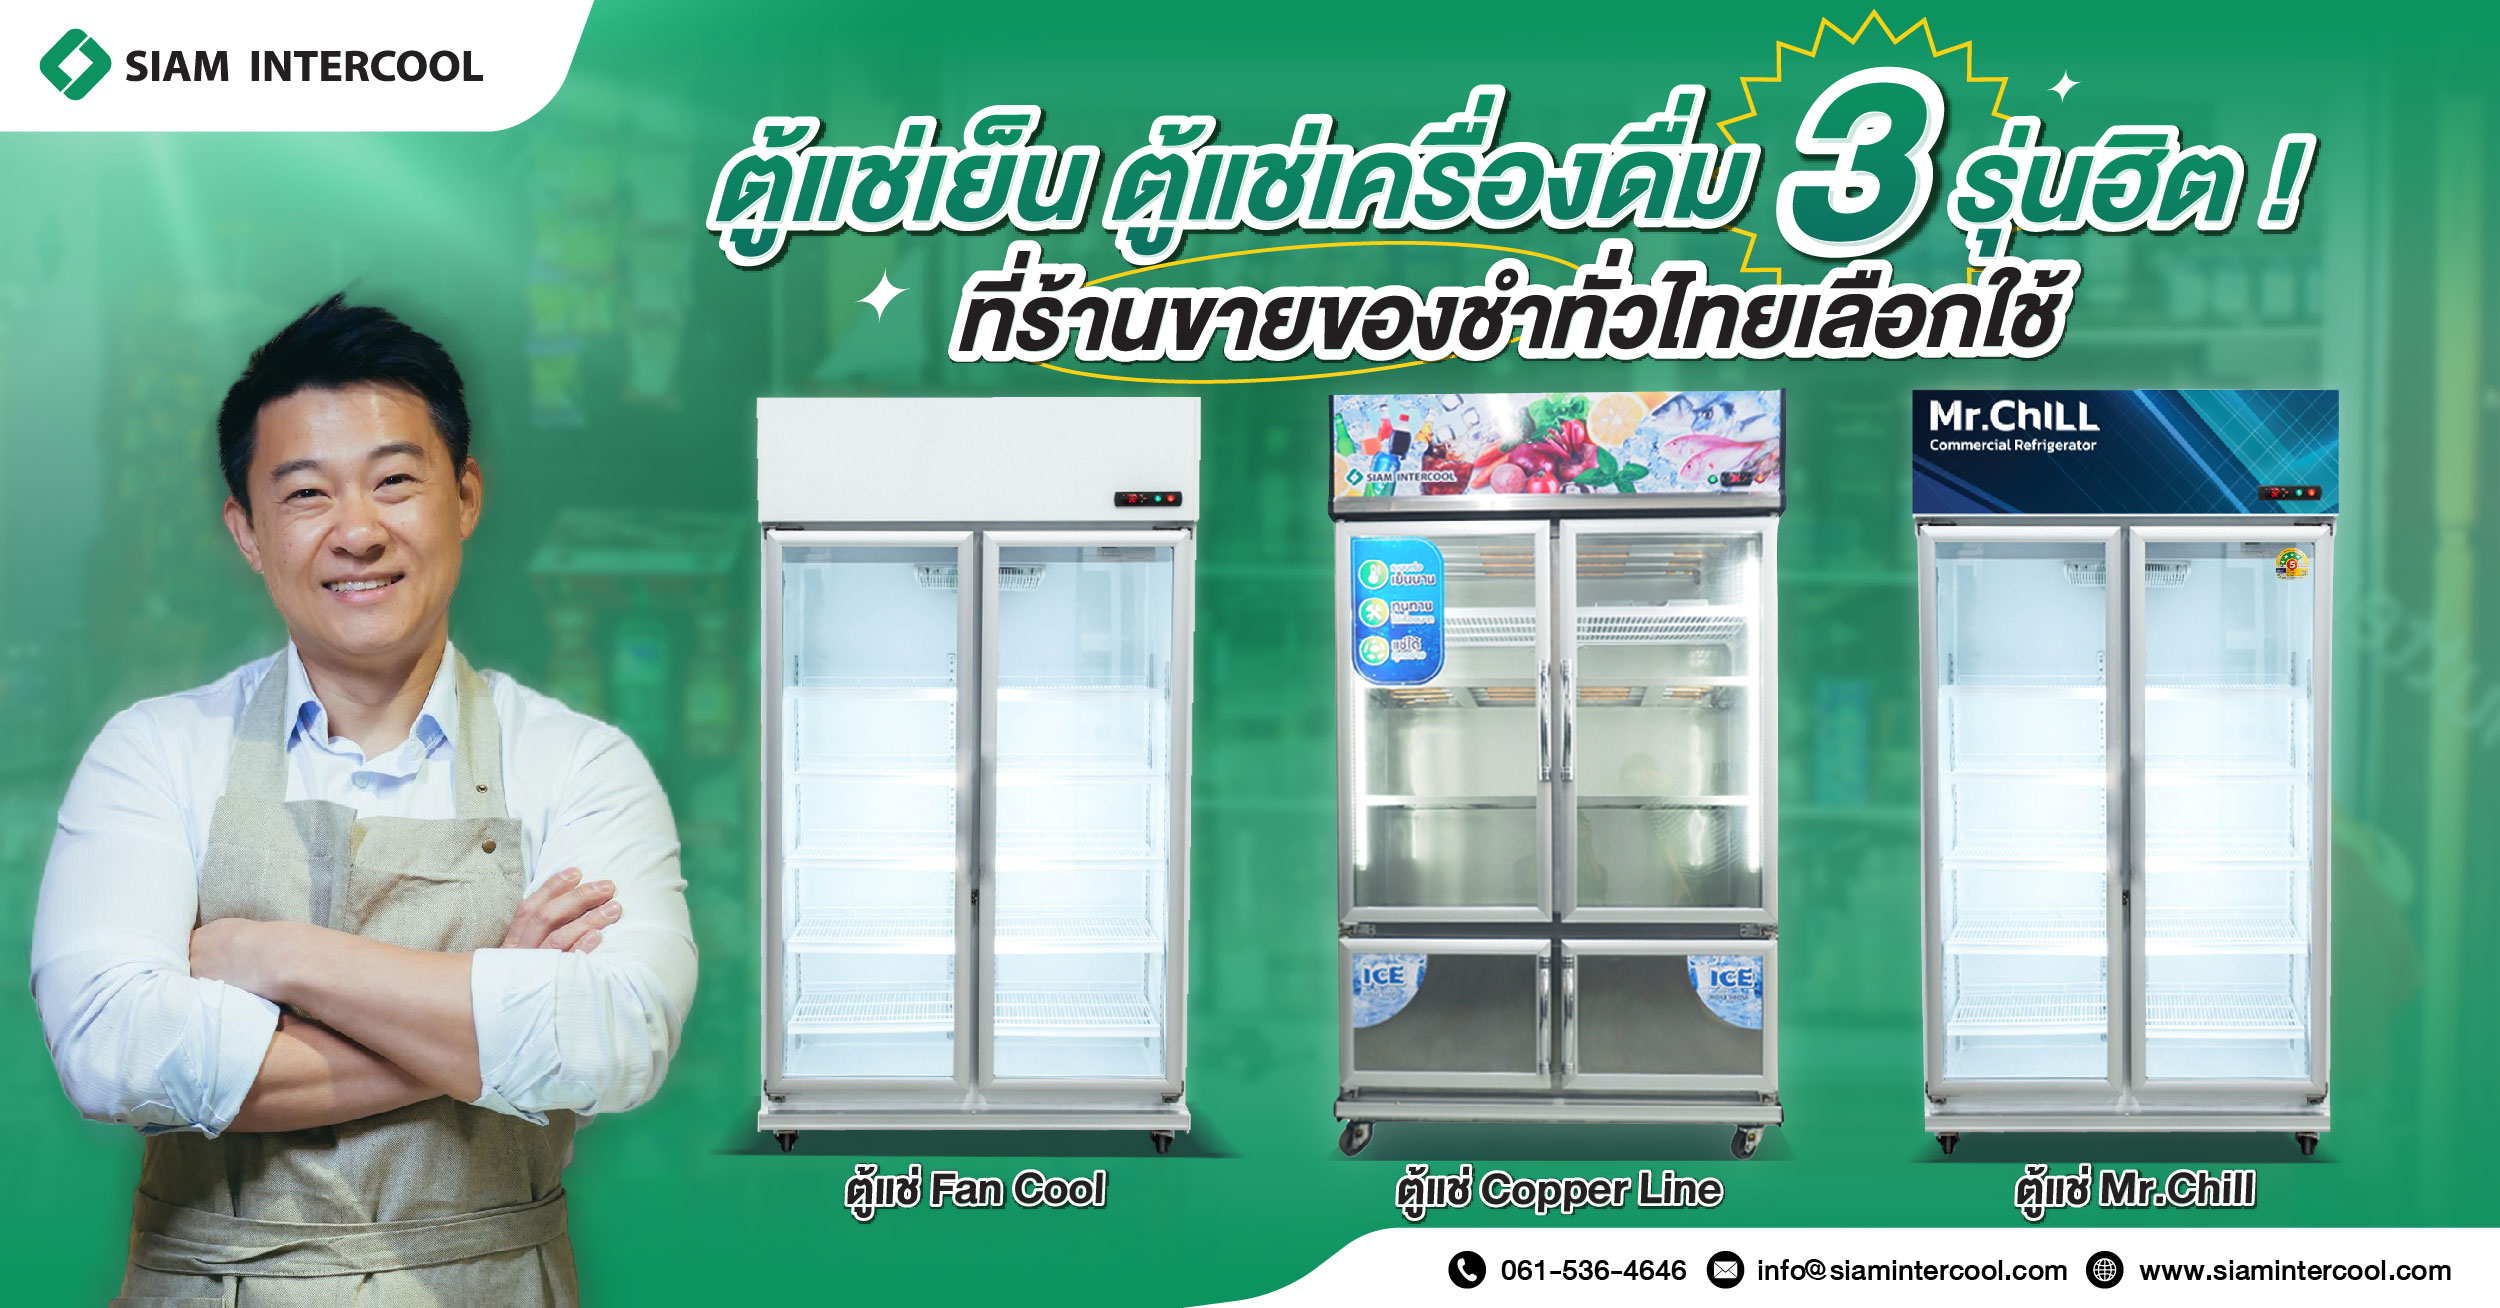 ตู้แช่เย็น ตู้แช่เครื่องดื่ม 3 รุ่นฮิต ! ที่ร้านขายของชำทั่วไทยเลือกใช้